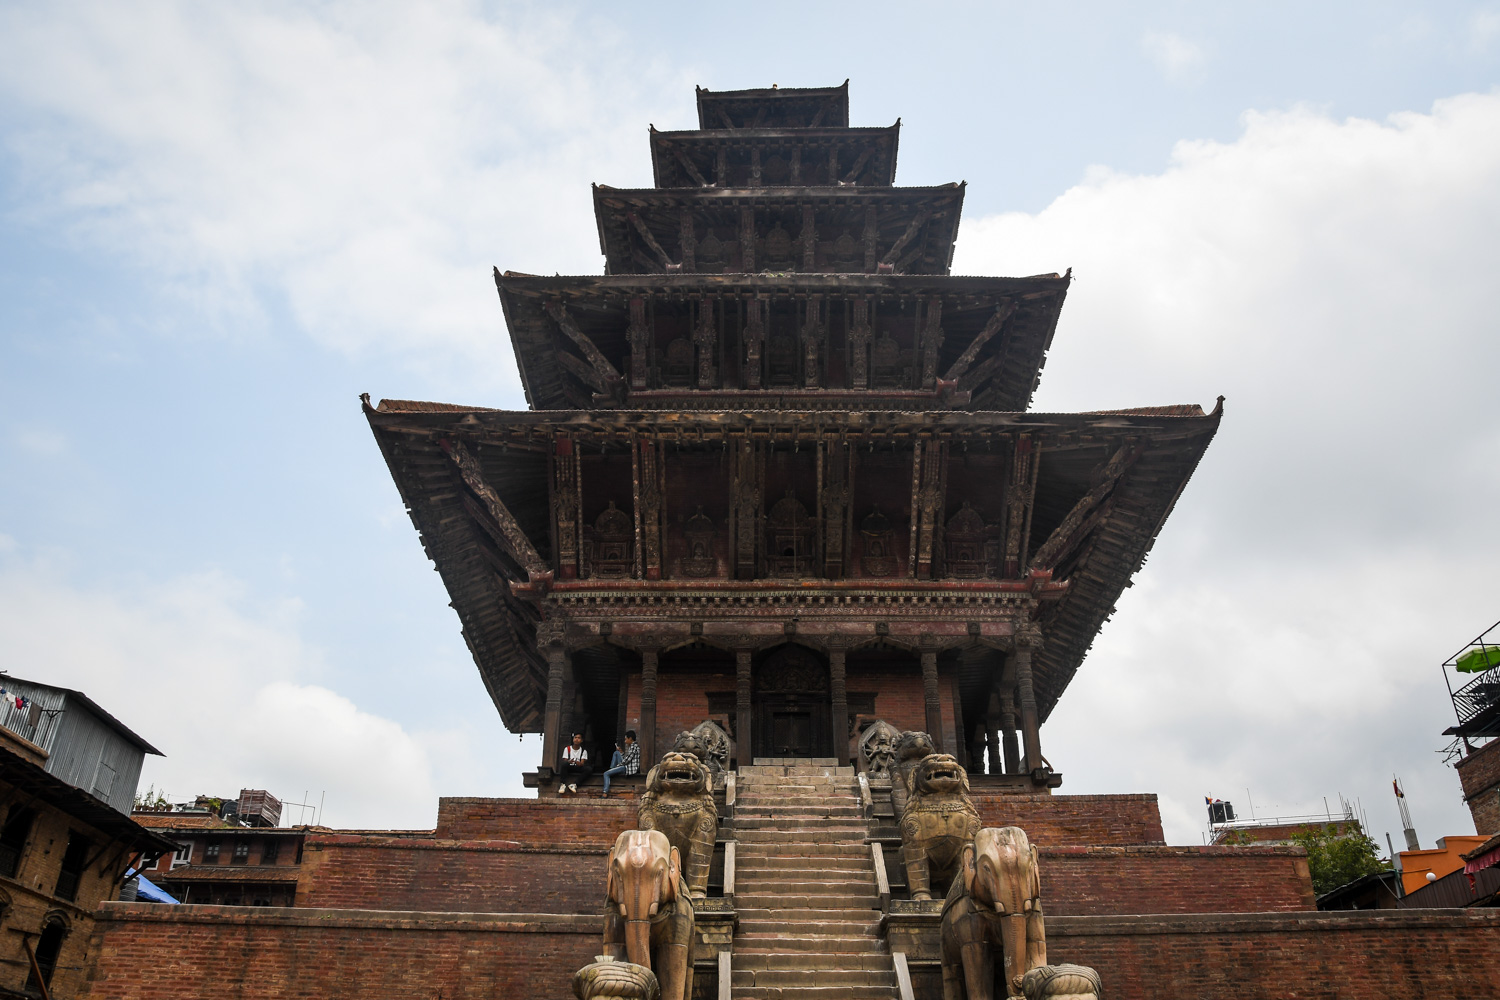 在尼泊尔要做的事情:Bhaktapur Durbar广场5层寺庙